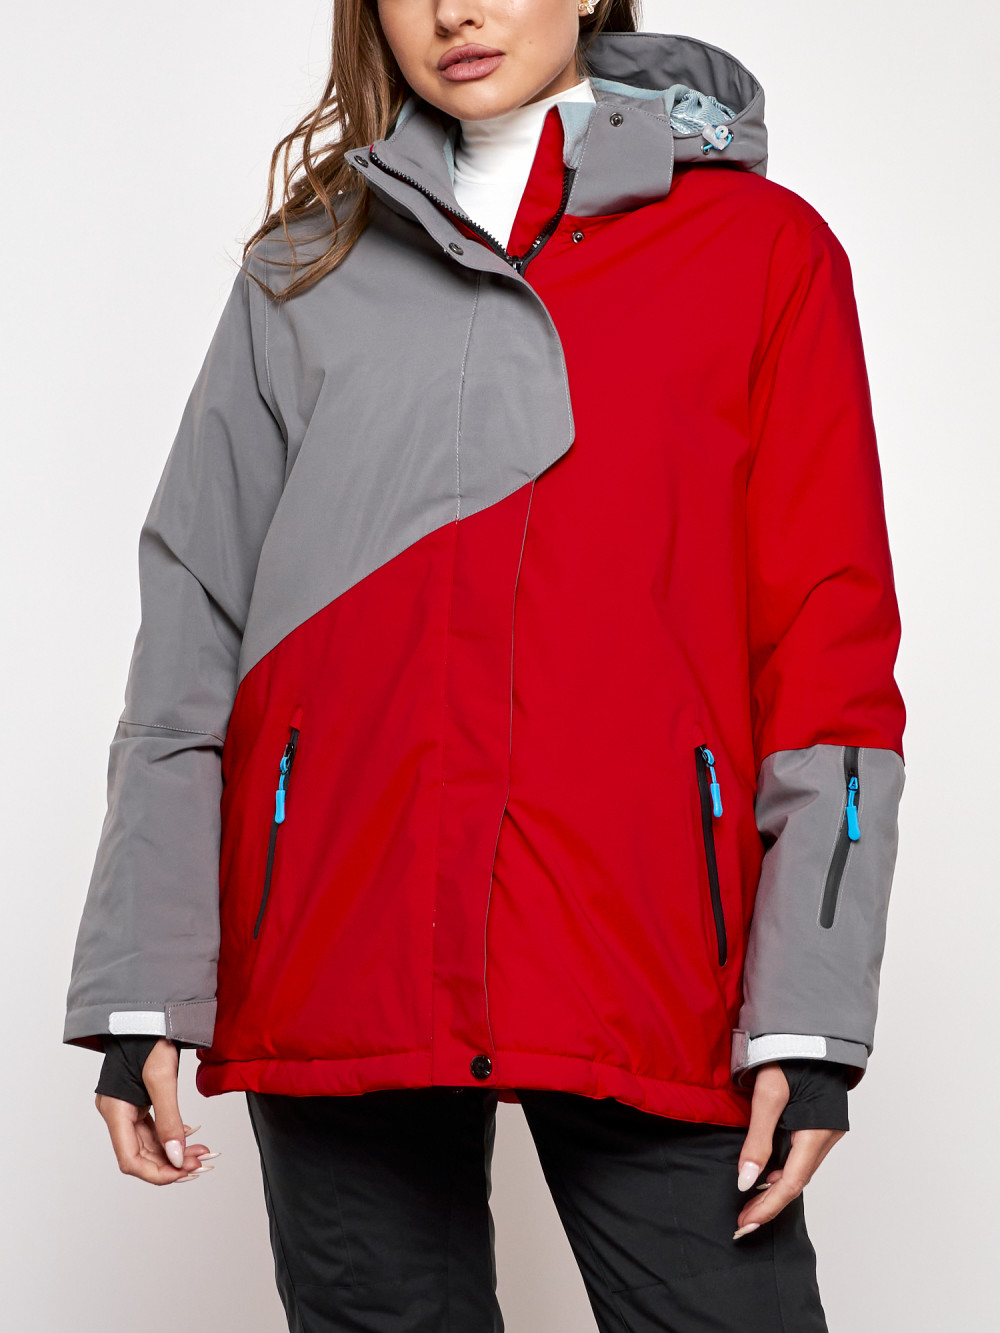 Горнолыжная куртка женская зимняя большого размера Chunmai AD2278Kr, 58